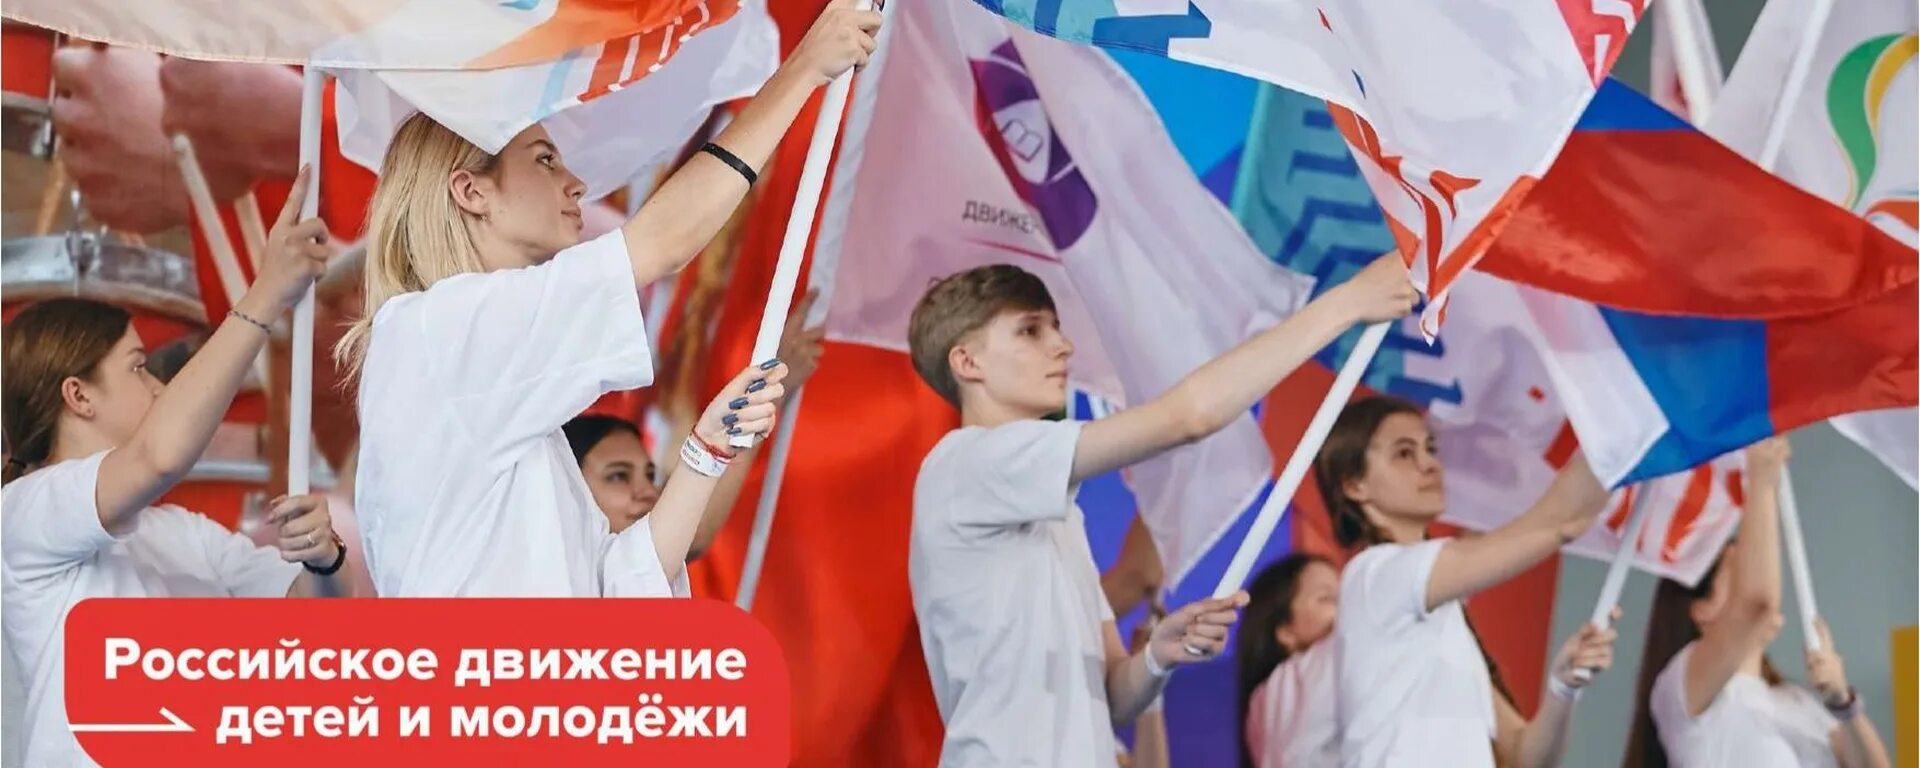 Миссия рддм движение первых. Российское движение детей и молодежи. Рддм российское движение первых. Детские и молодежные движения. Детское и молодежное движение это.